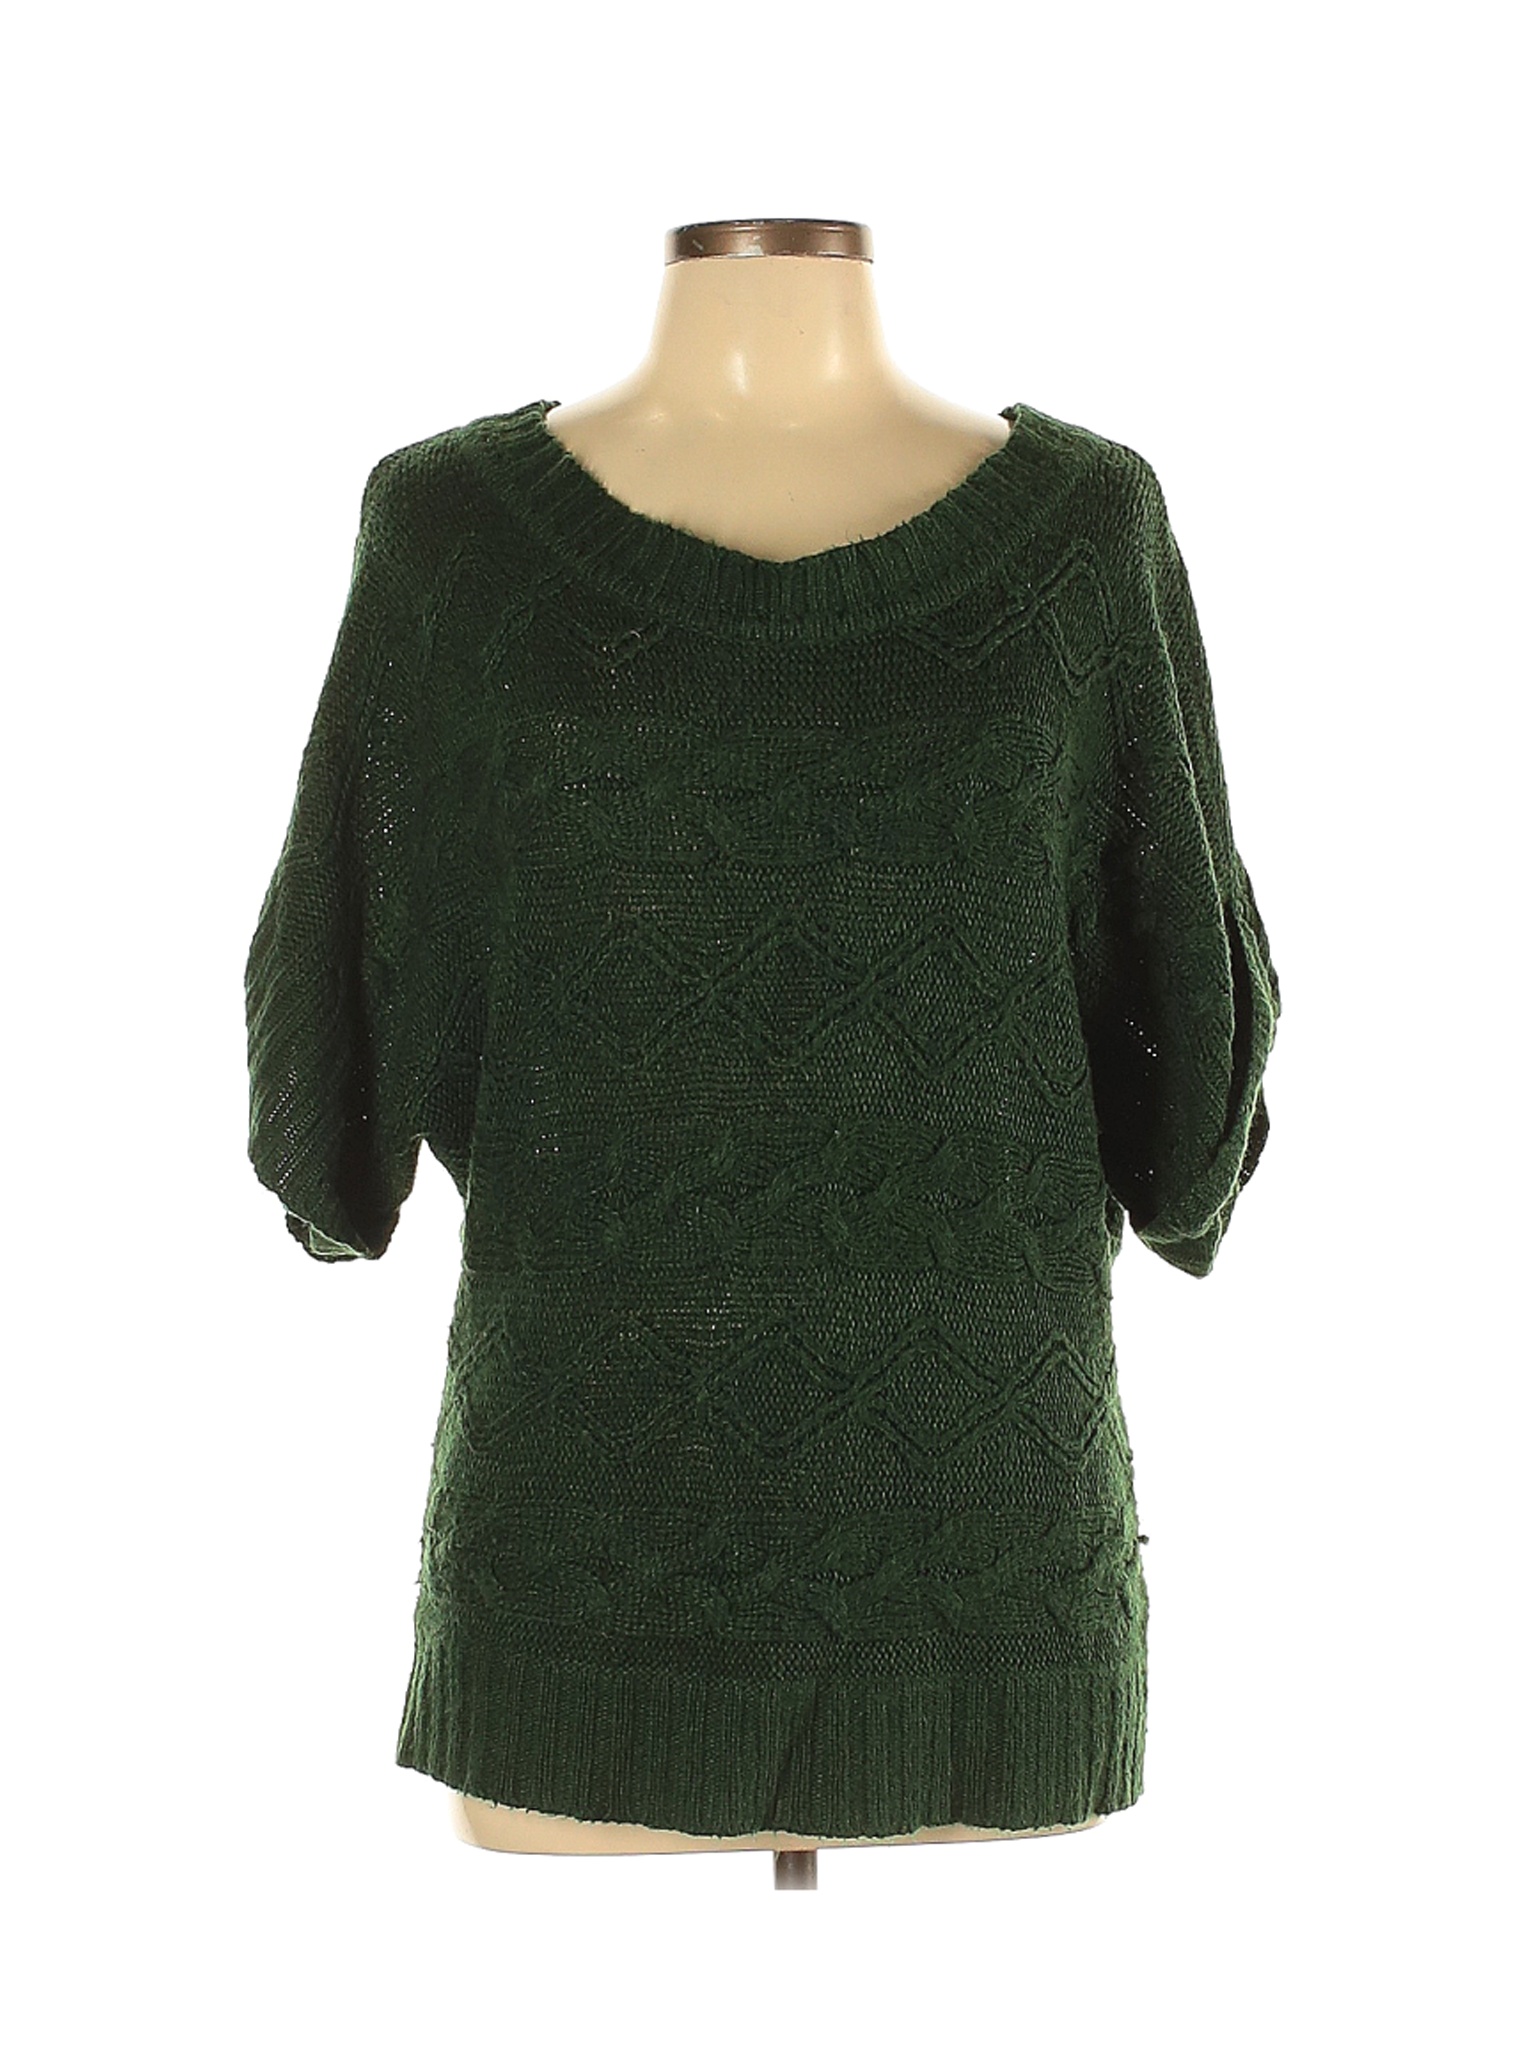 Forever 21 Women Green Pullover Sweater L | eBay